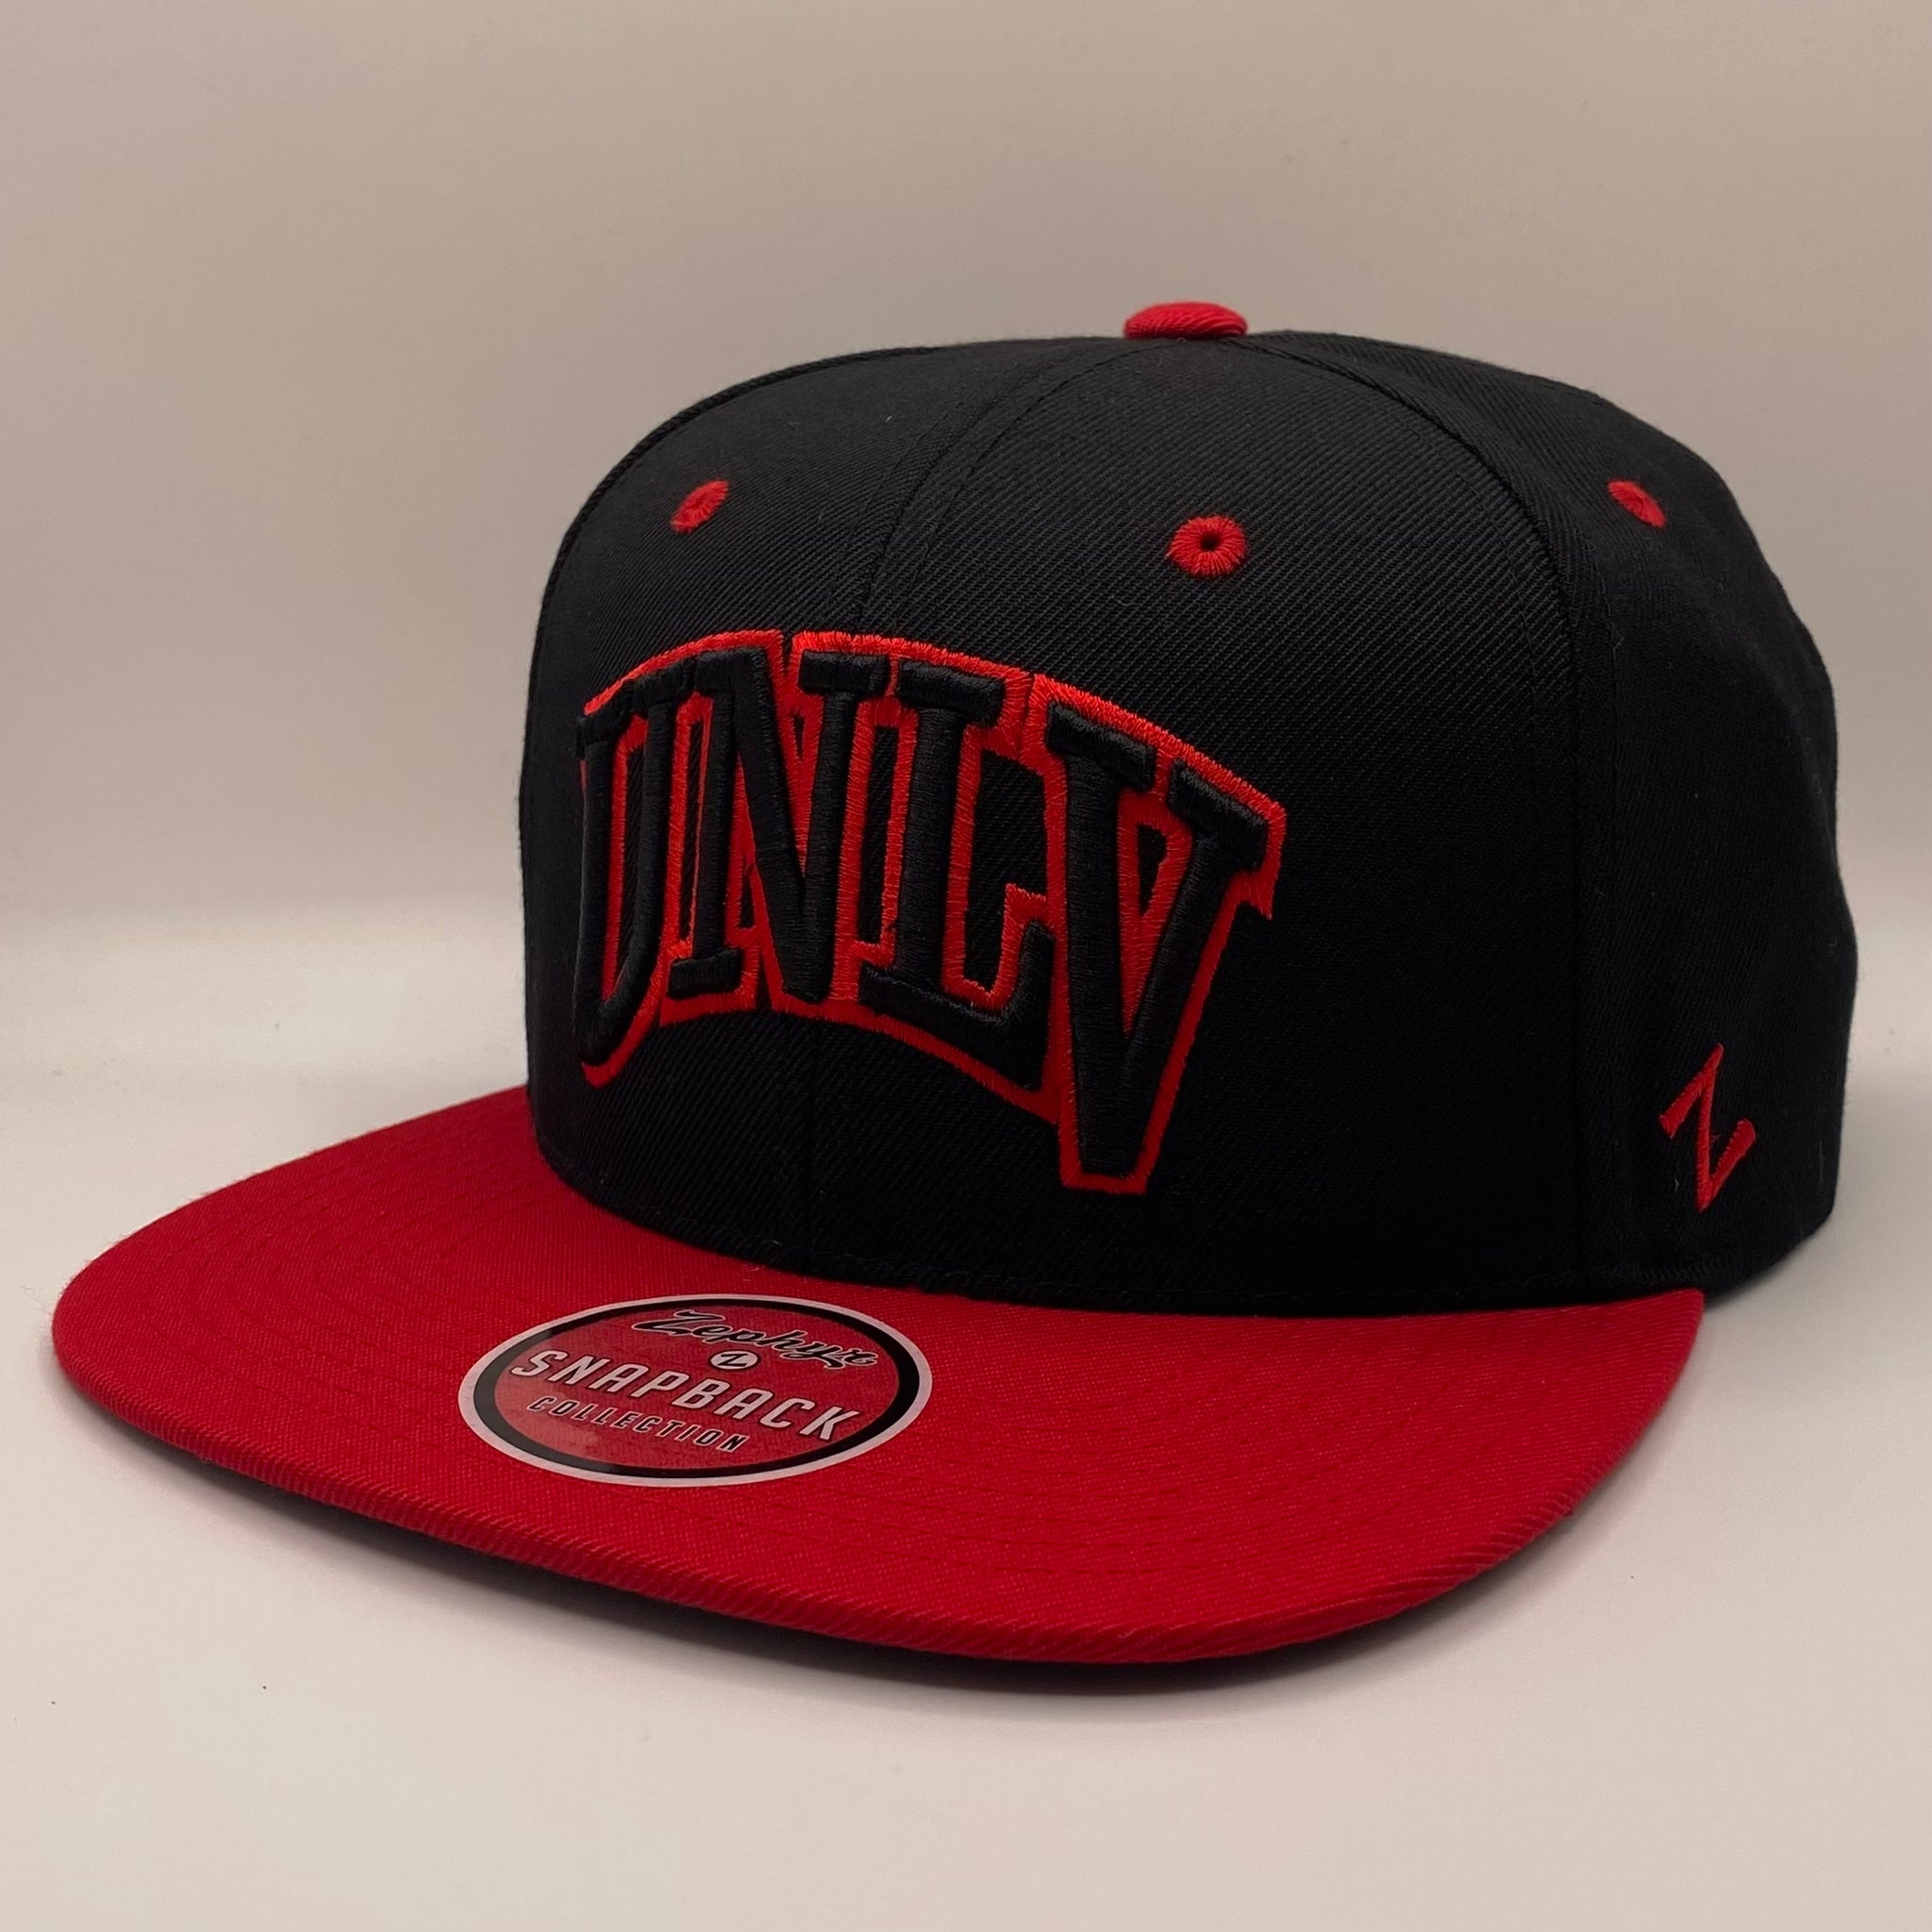 University of Nevada Las Vegas Rebels Wordmark Black And Red Snapback